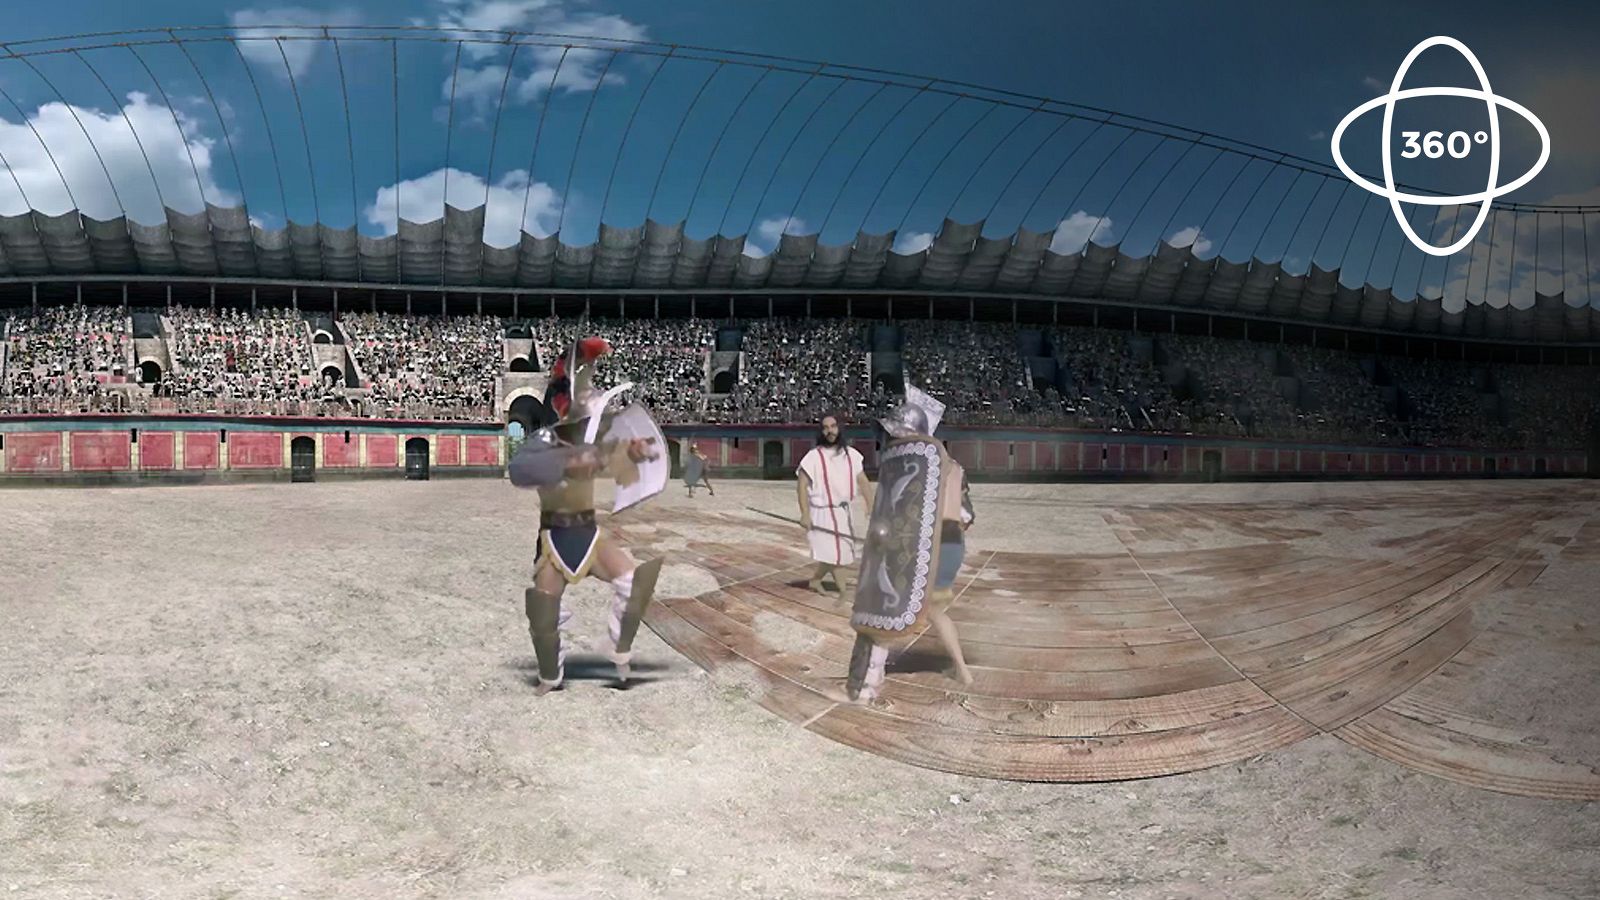 Ingeniería romana 360º: Así luchaban los gladiadores romanos